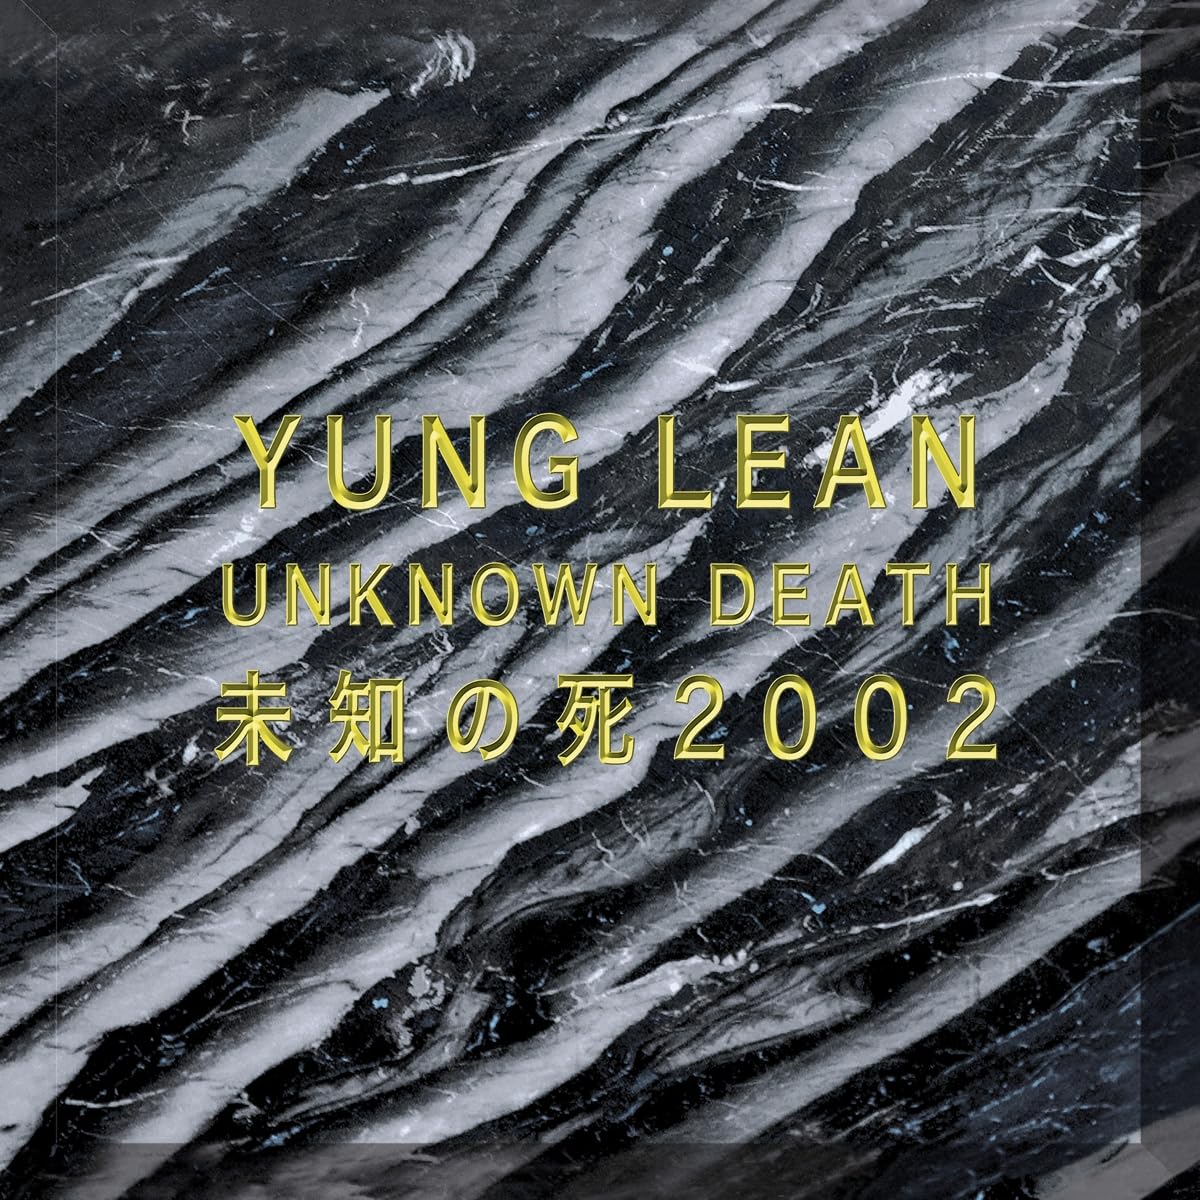 YUNG LEAN - UNKNOWN DEATH 2002 Vinyl LP